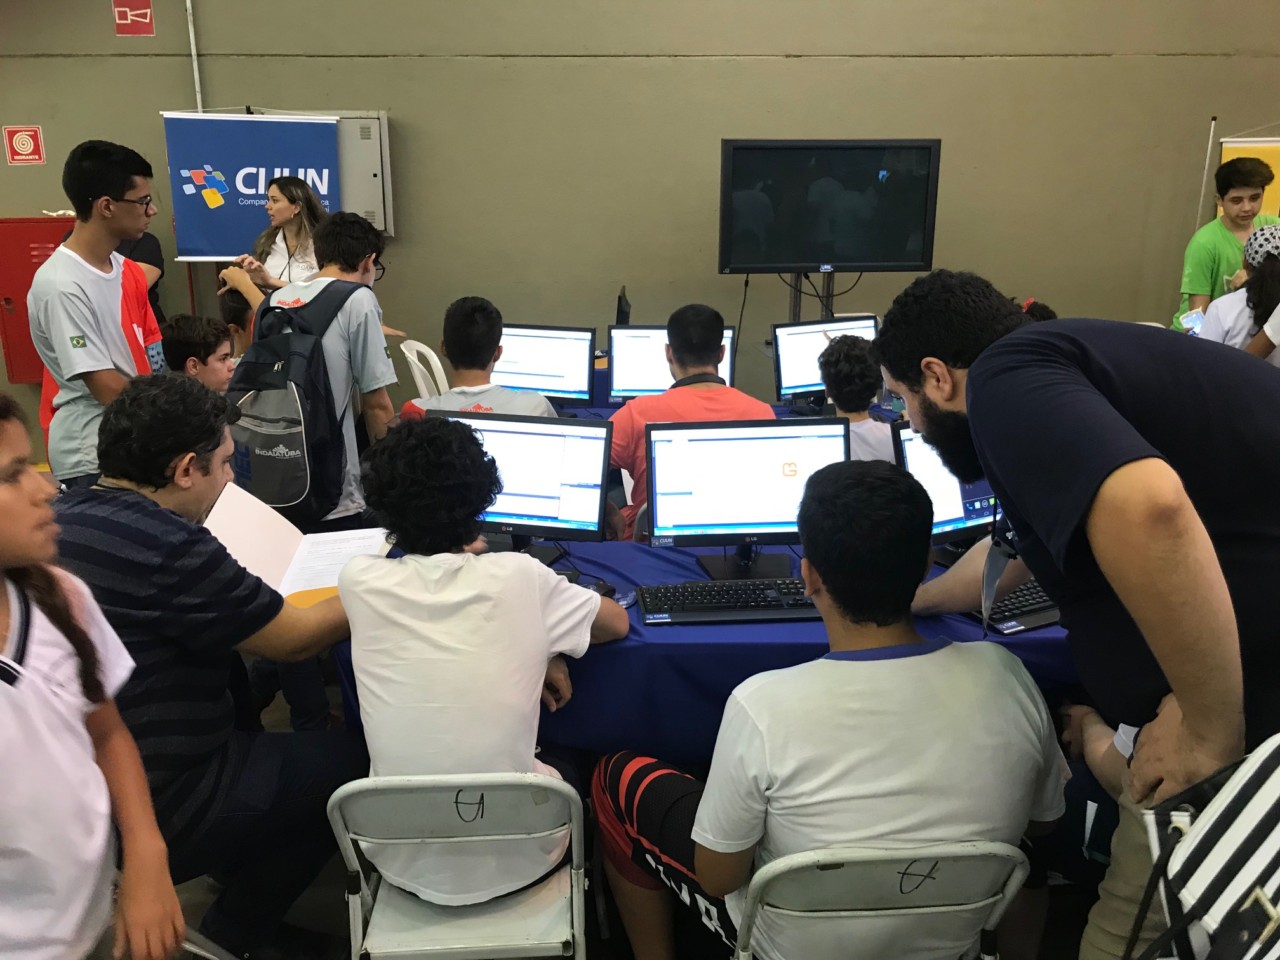 Crianças participam de atividade em computadores da Cijun durante o evento